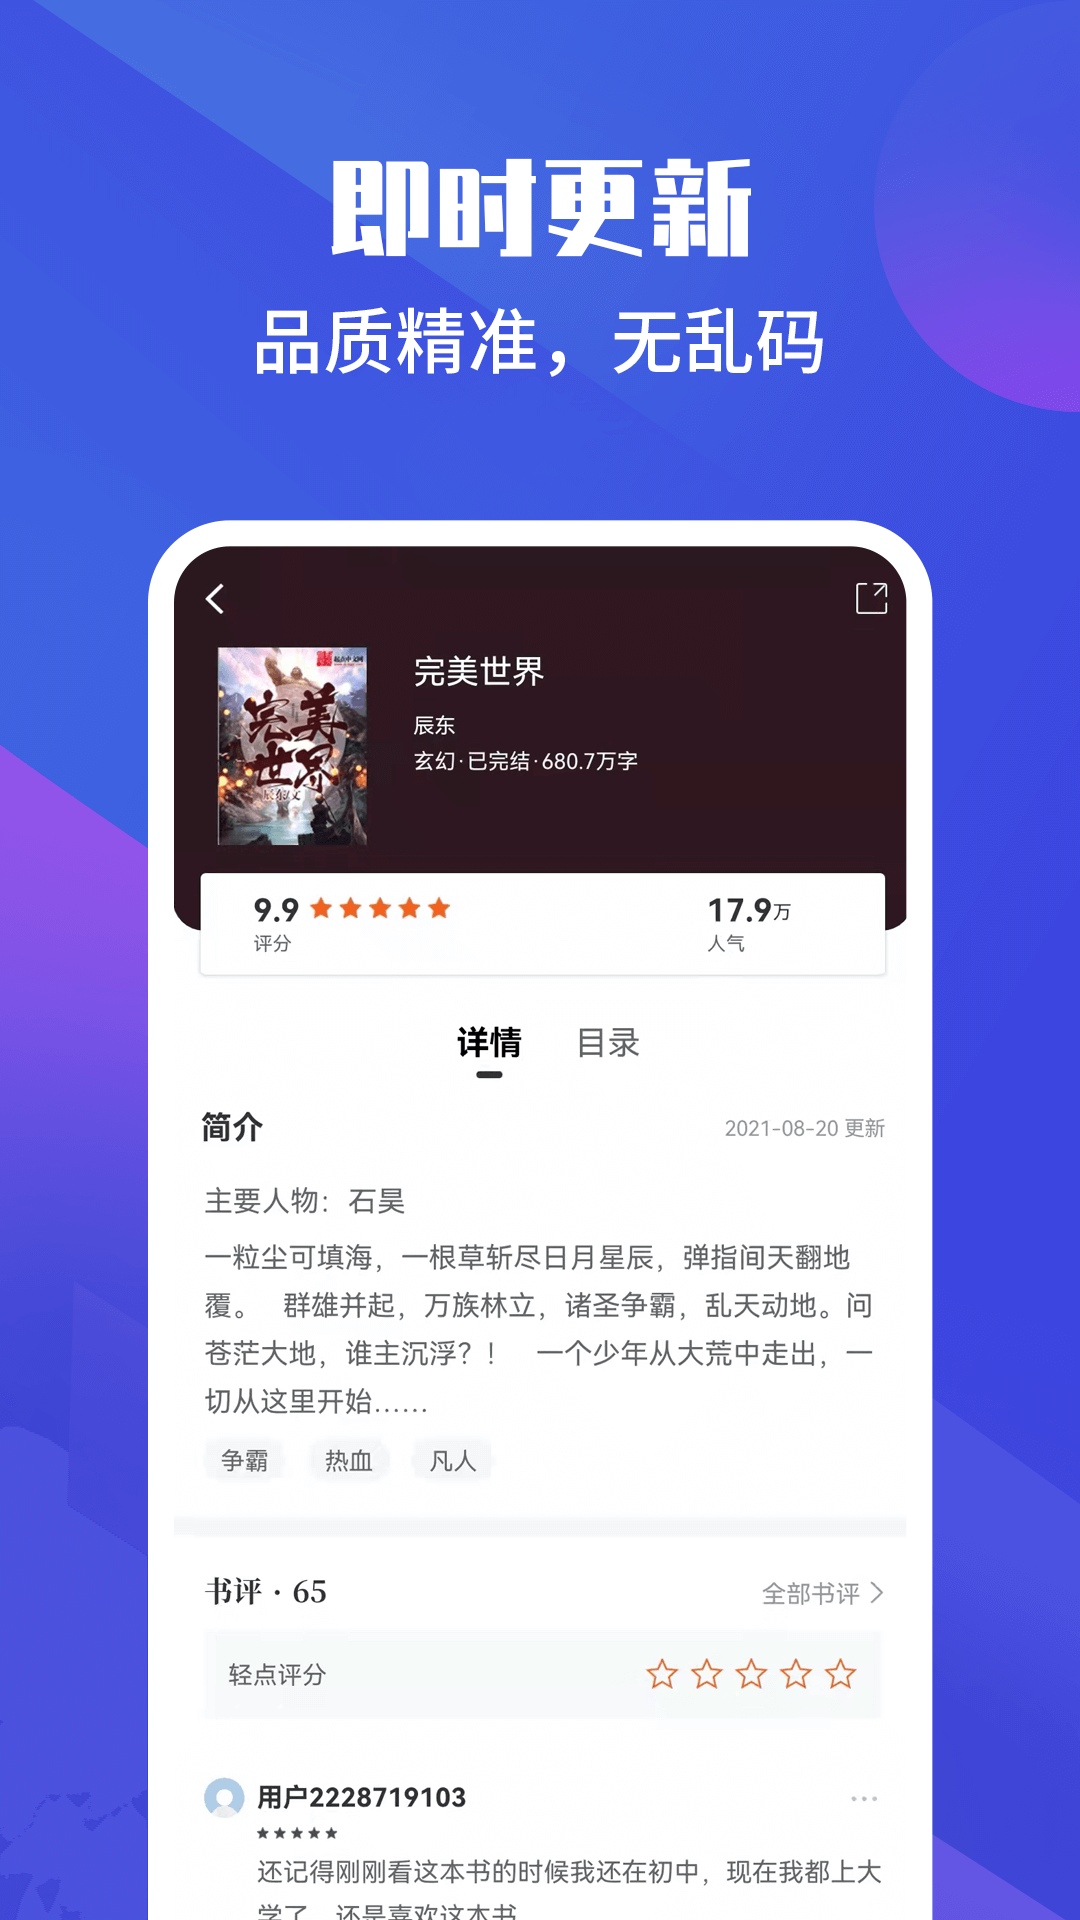 藏书院app下载-藏书院在线小说免费阅读软件安卓版下载v1.2.0